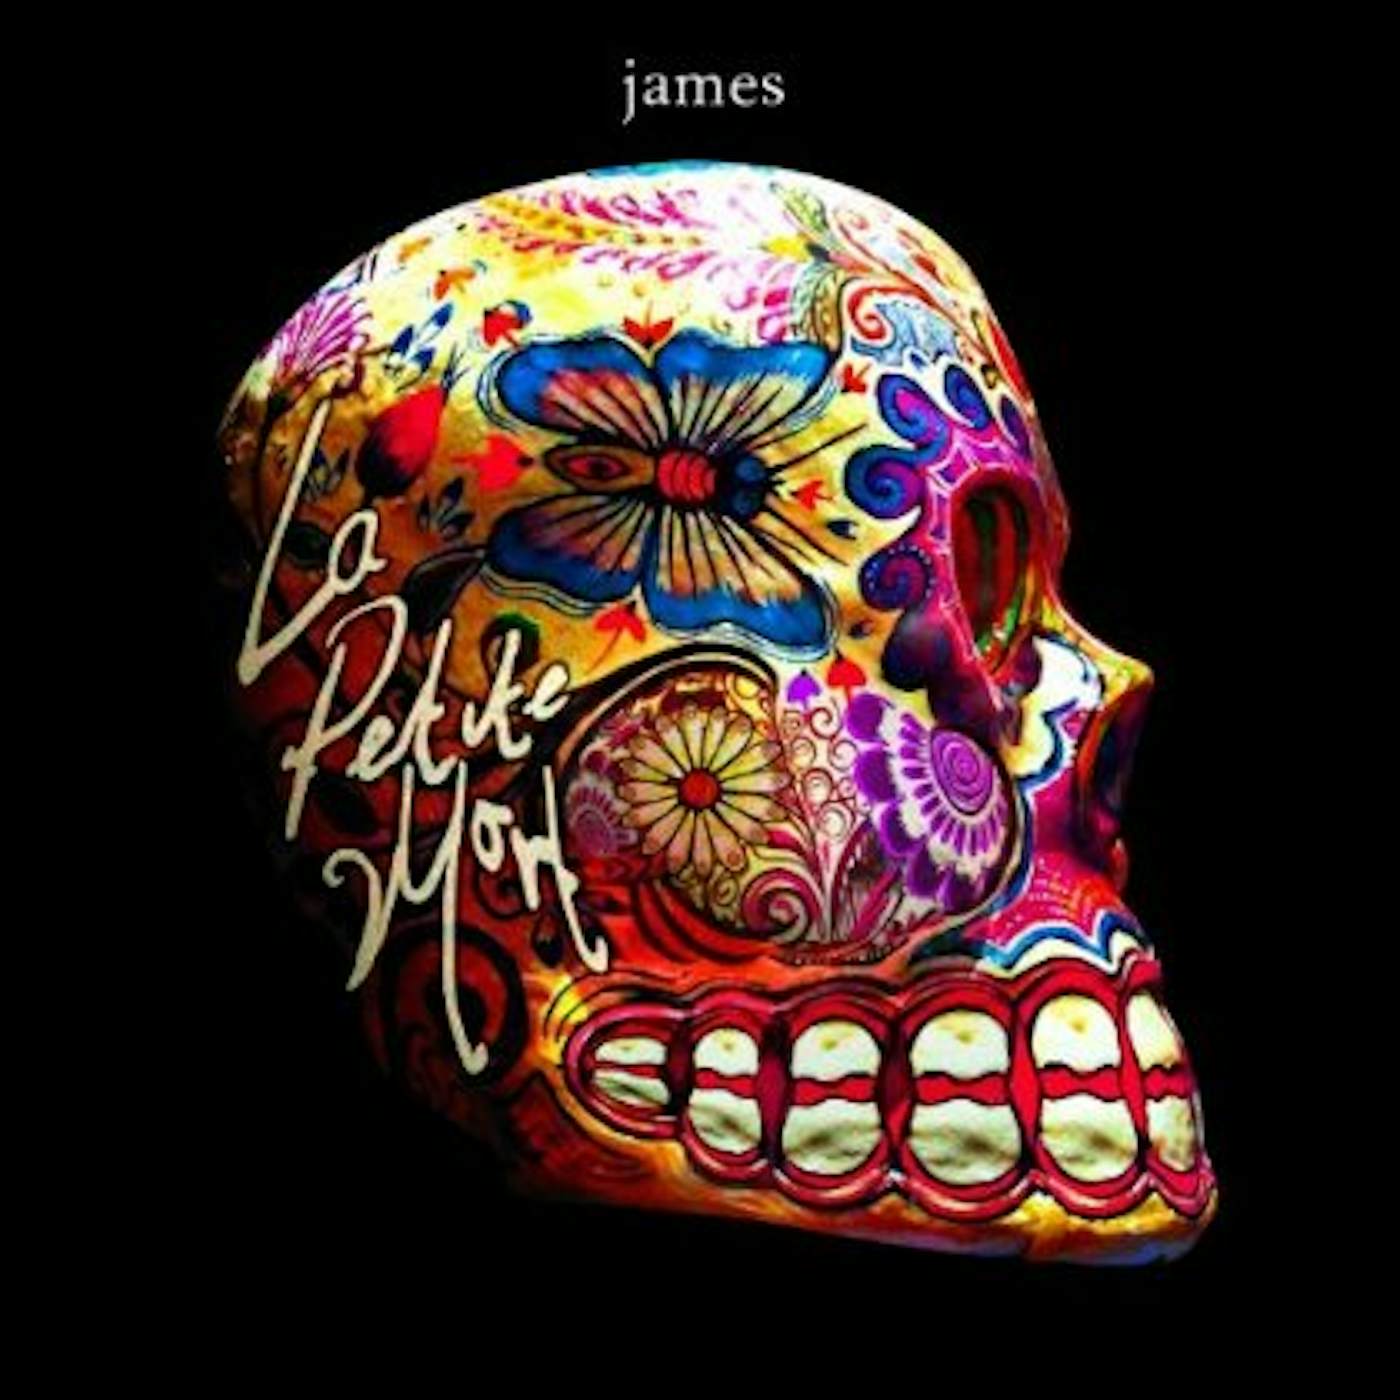 James La Petite Mort Vinyl Record